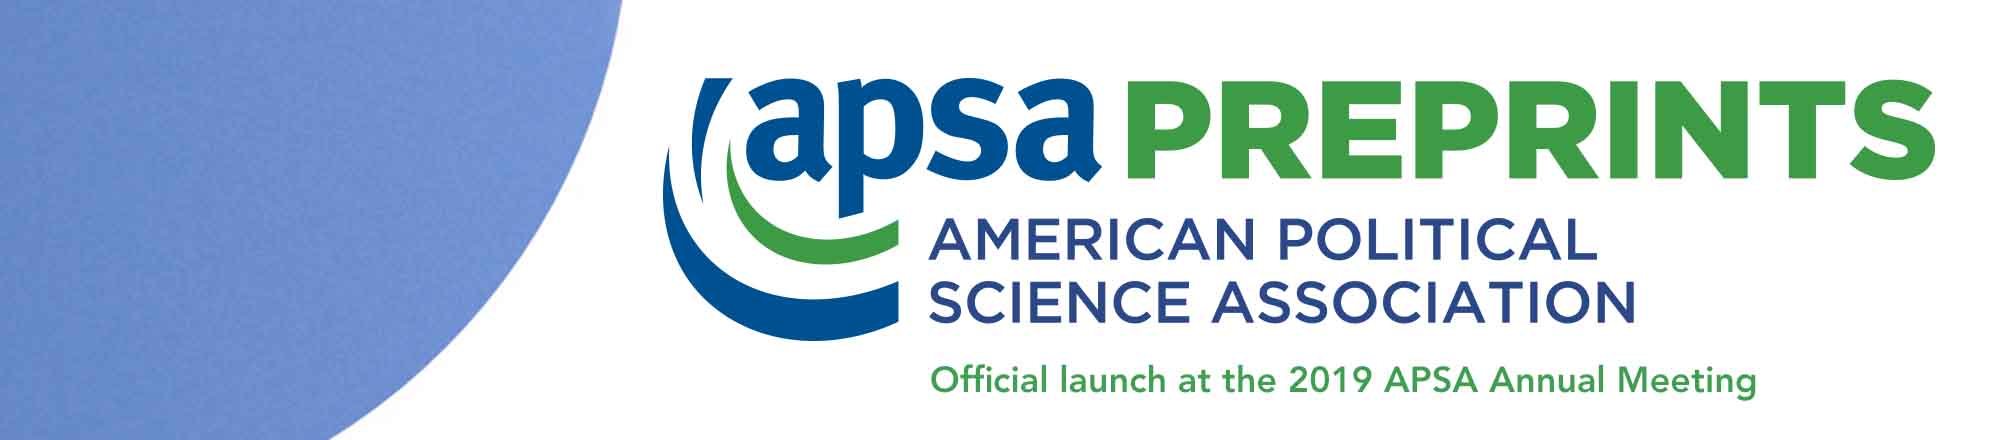 APSA Preprints launching